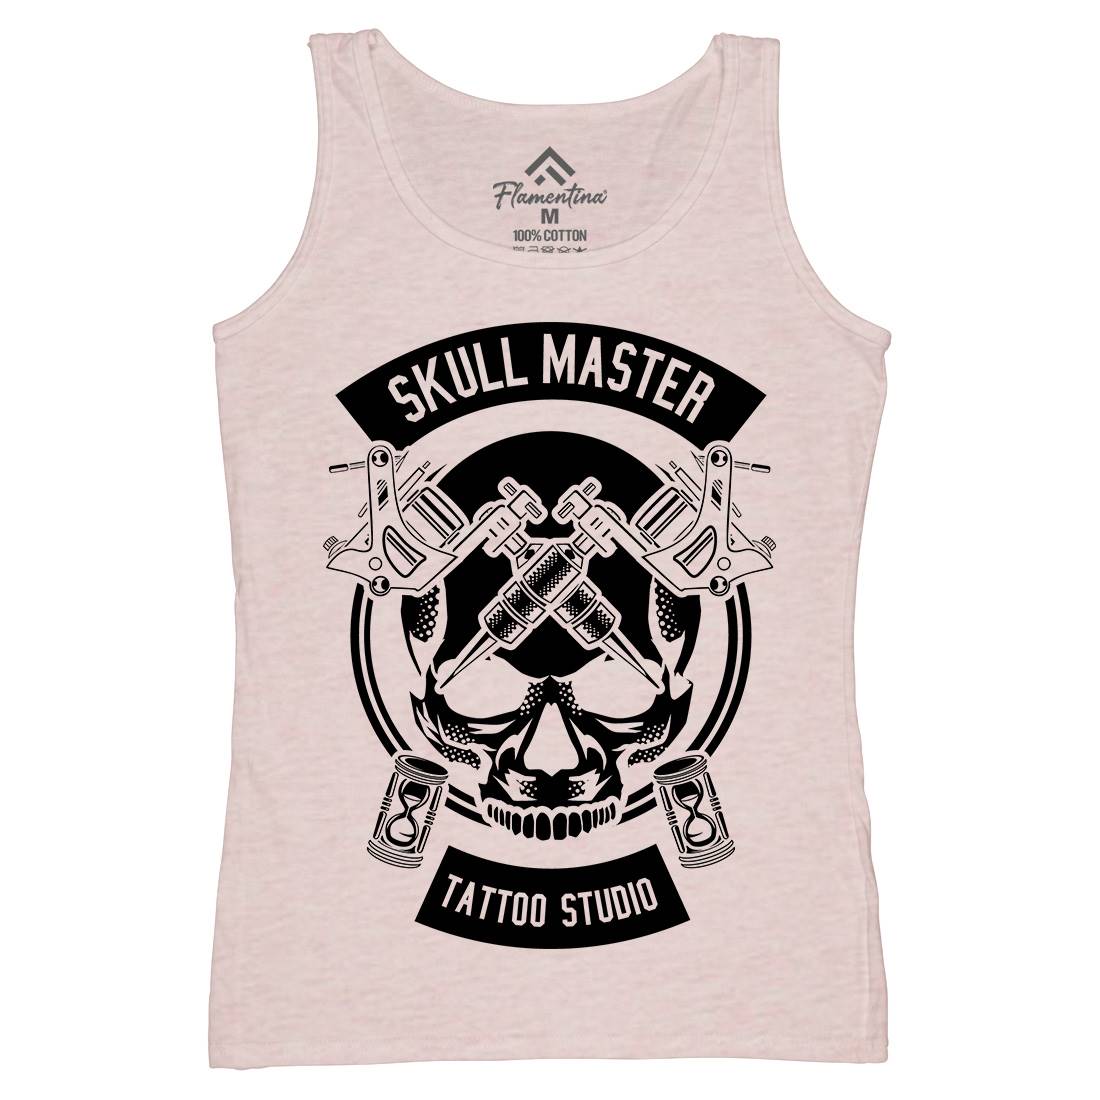 Skull Master Womens Organic Tank Top Vest Tattoo B630